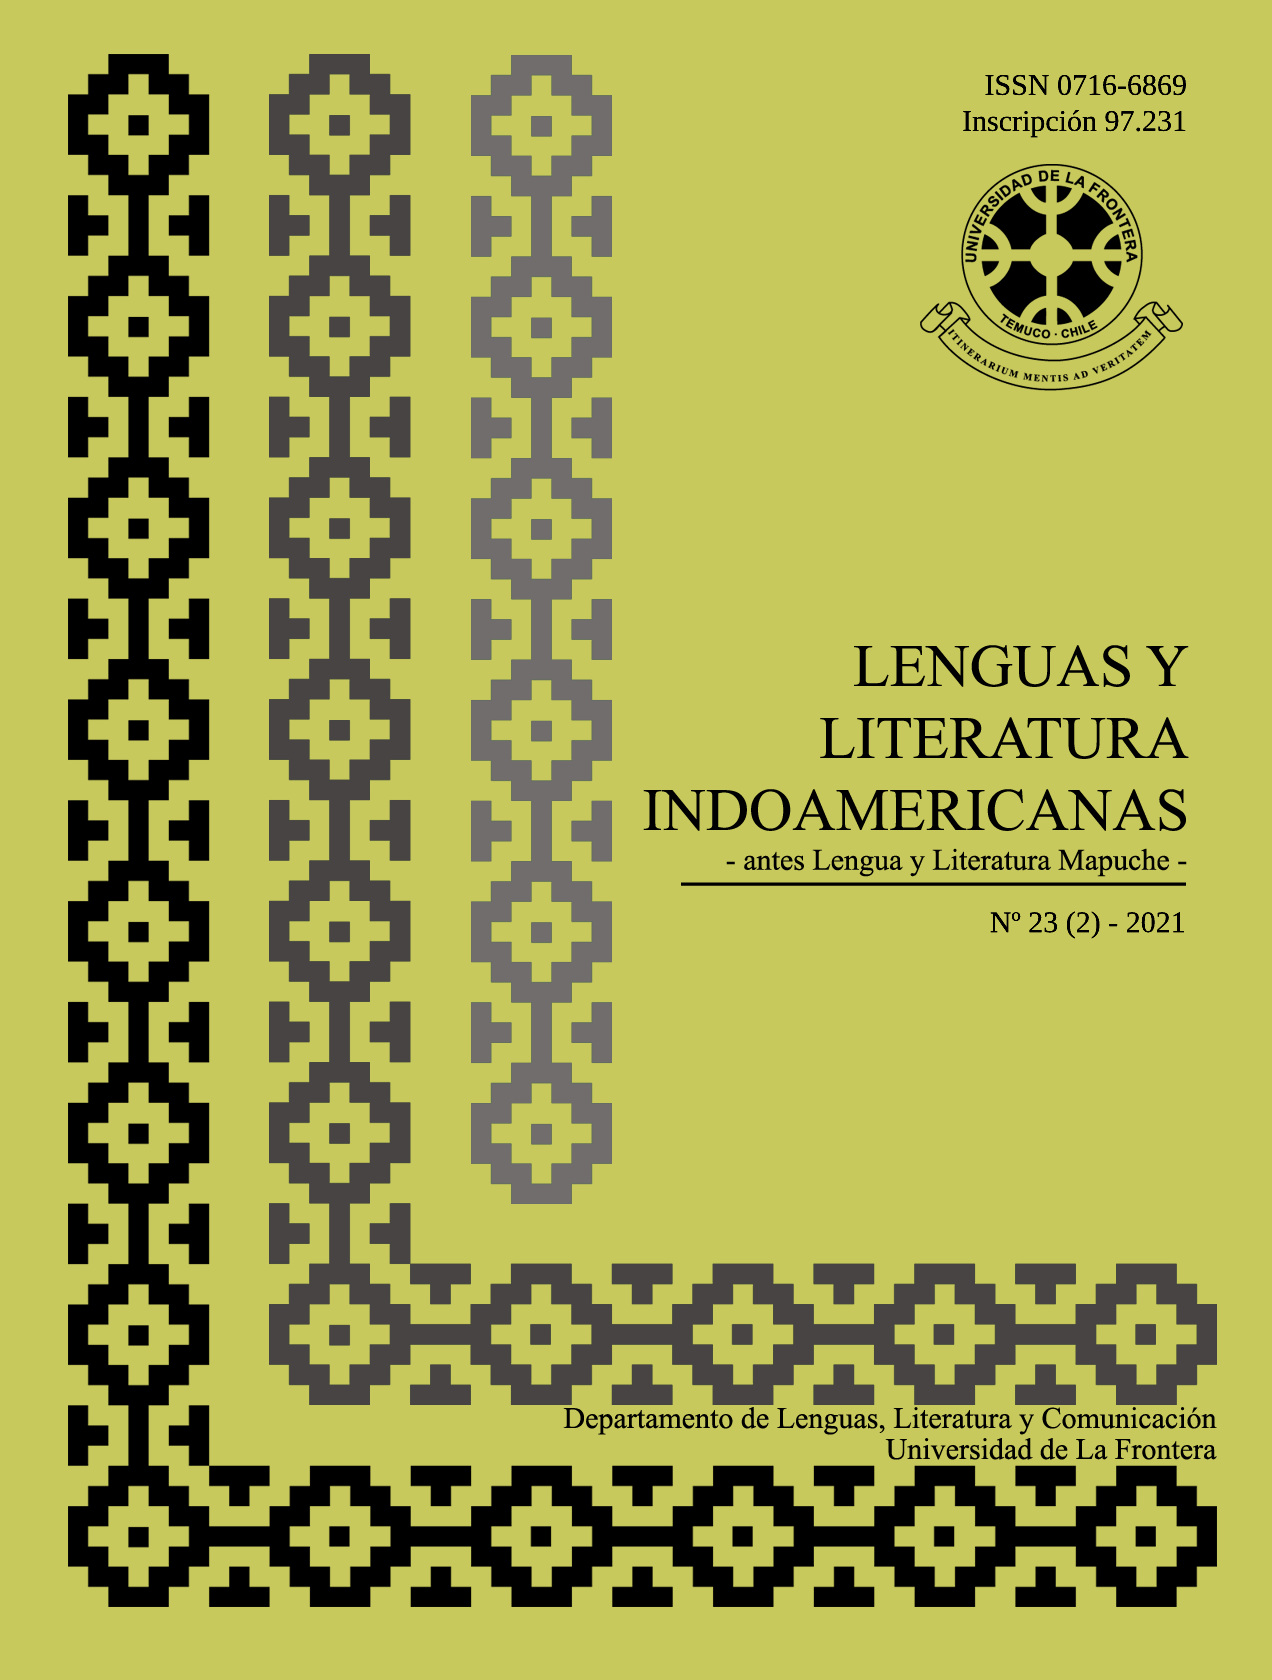 					Ver Vol. 23 Núm. 2 (2021): Revista de Lenguas y Literatura Indoamericanas (RLLI). Número Monográfico
				